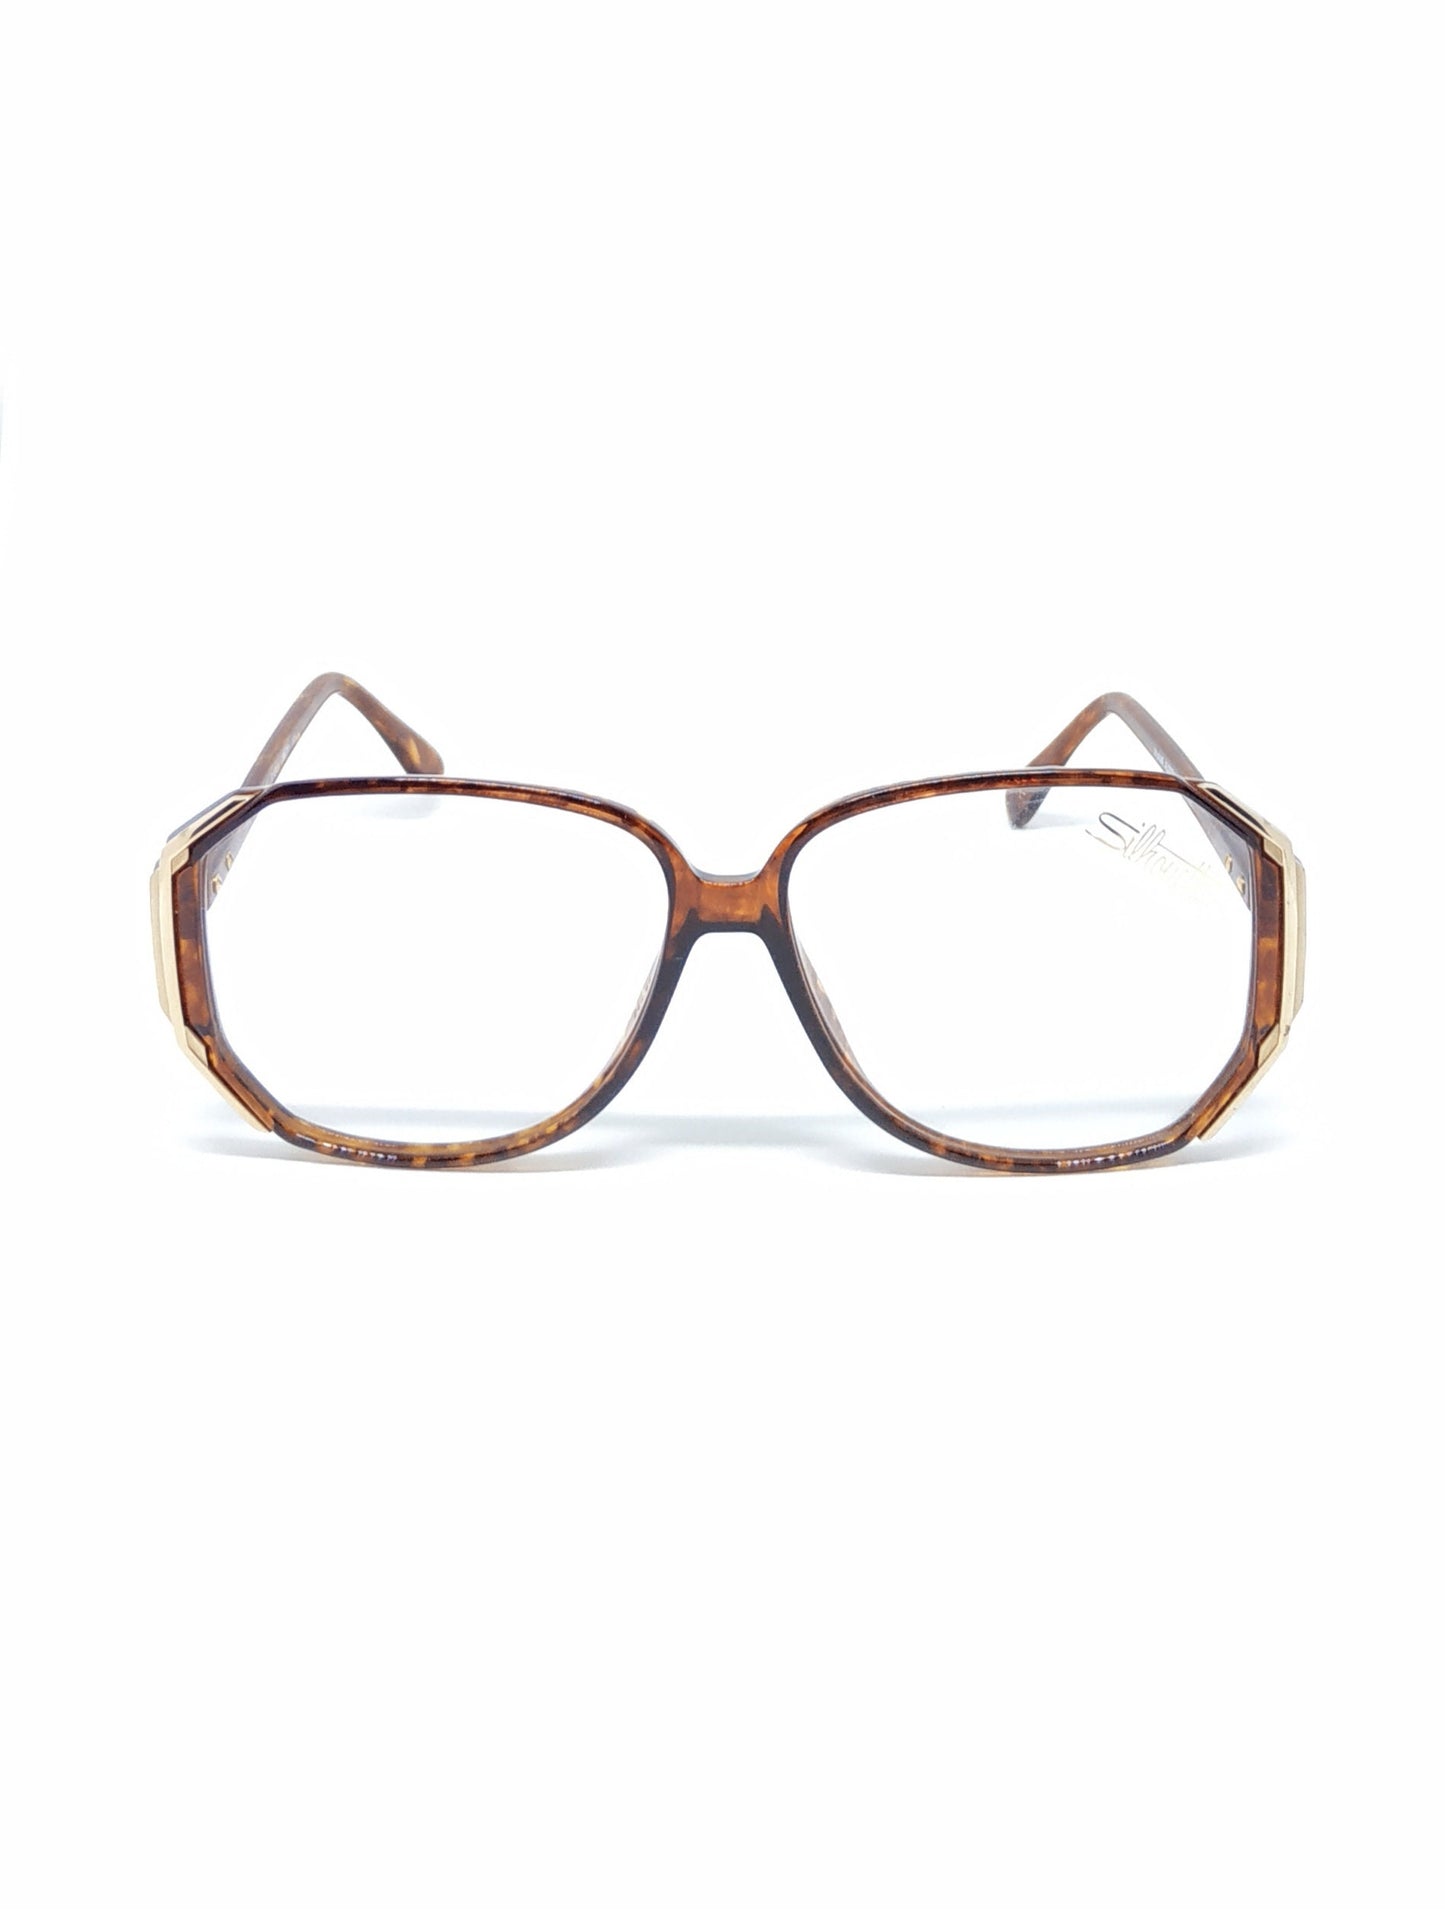 Vintage New old stock eyeglasses frames. Mod. M1201